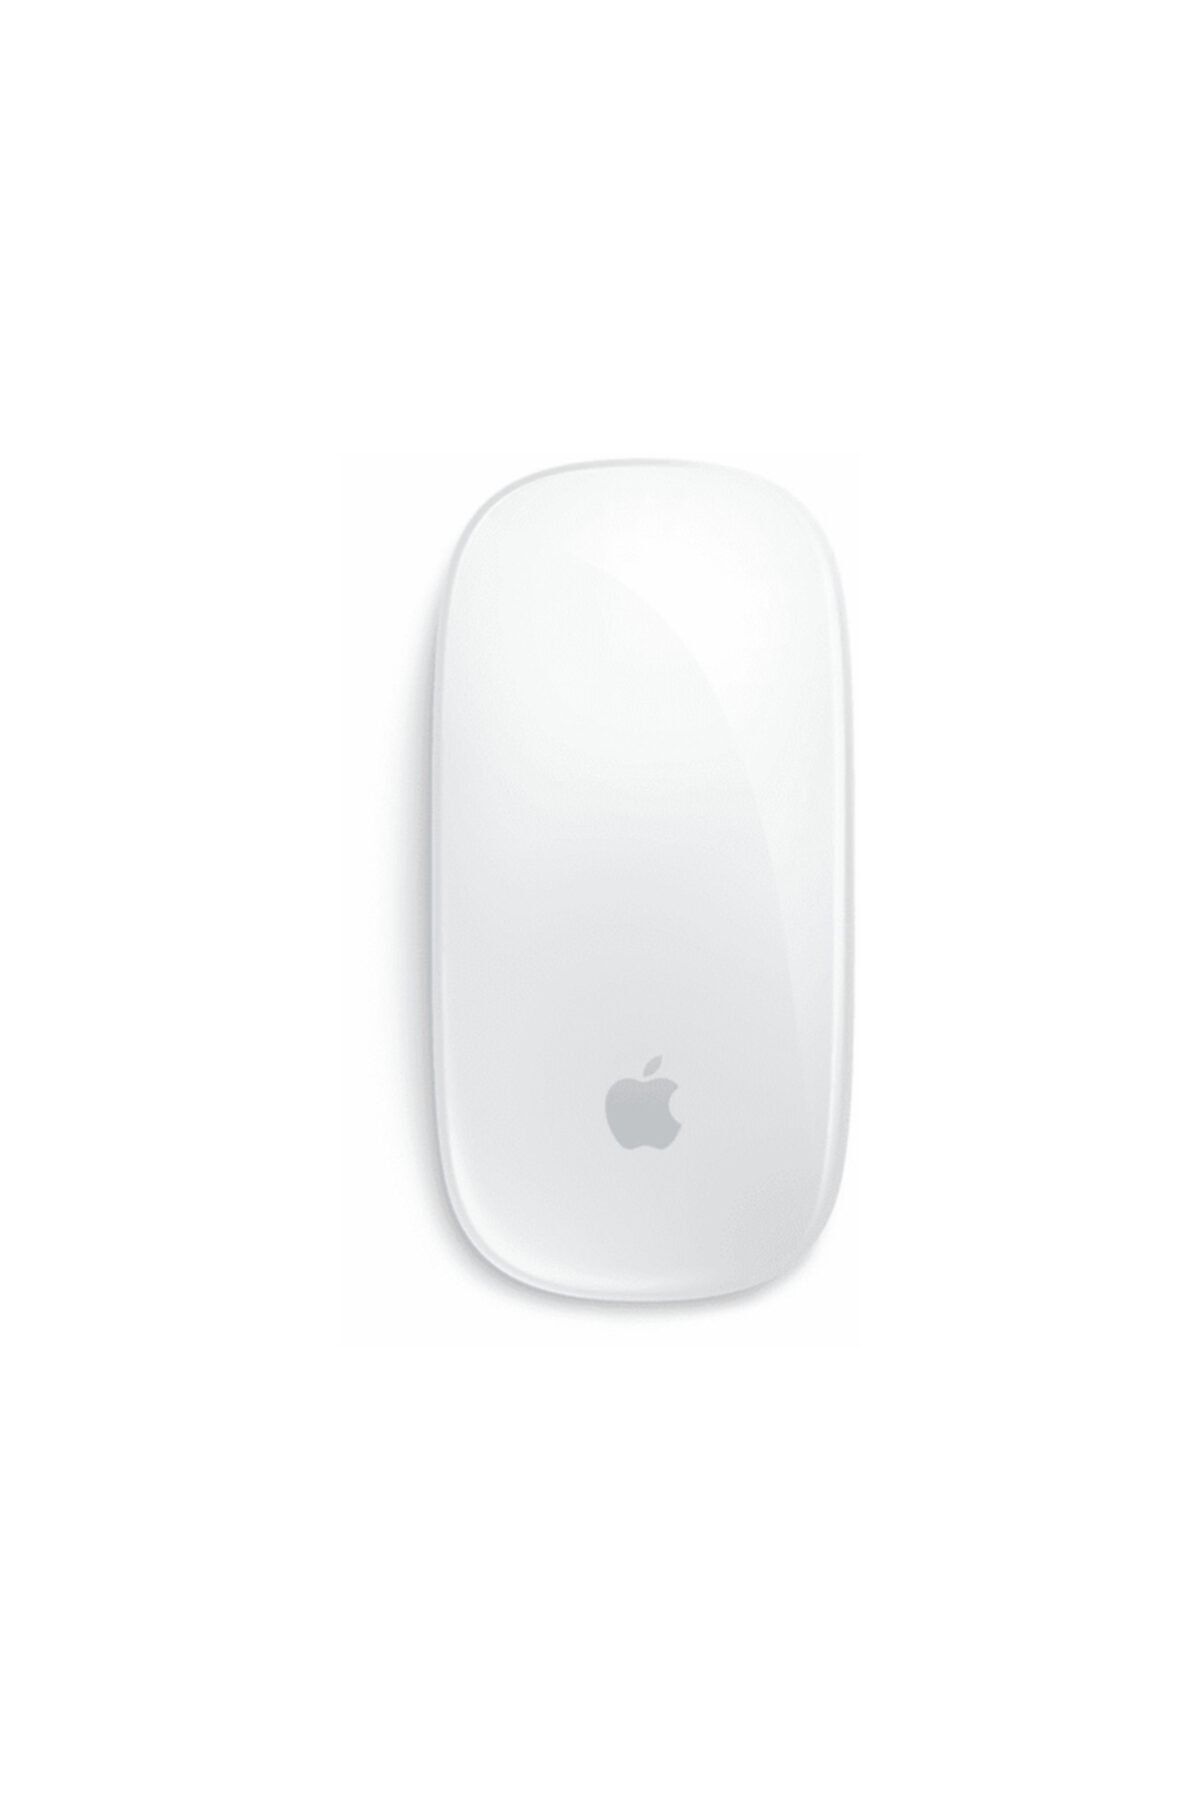 Apple Magic Kablosuz Mouse